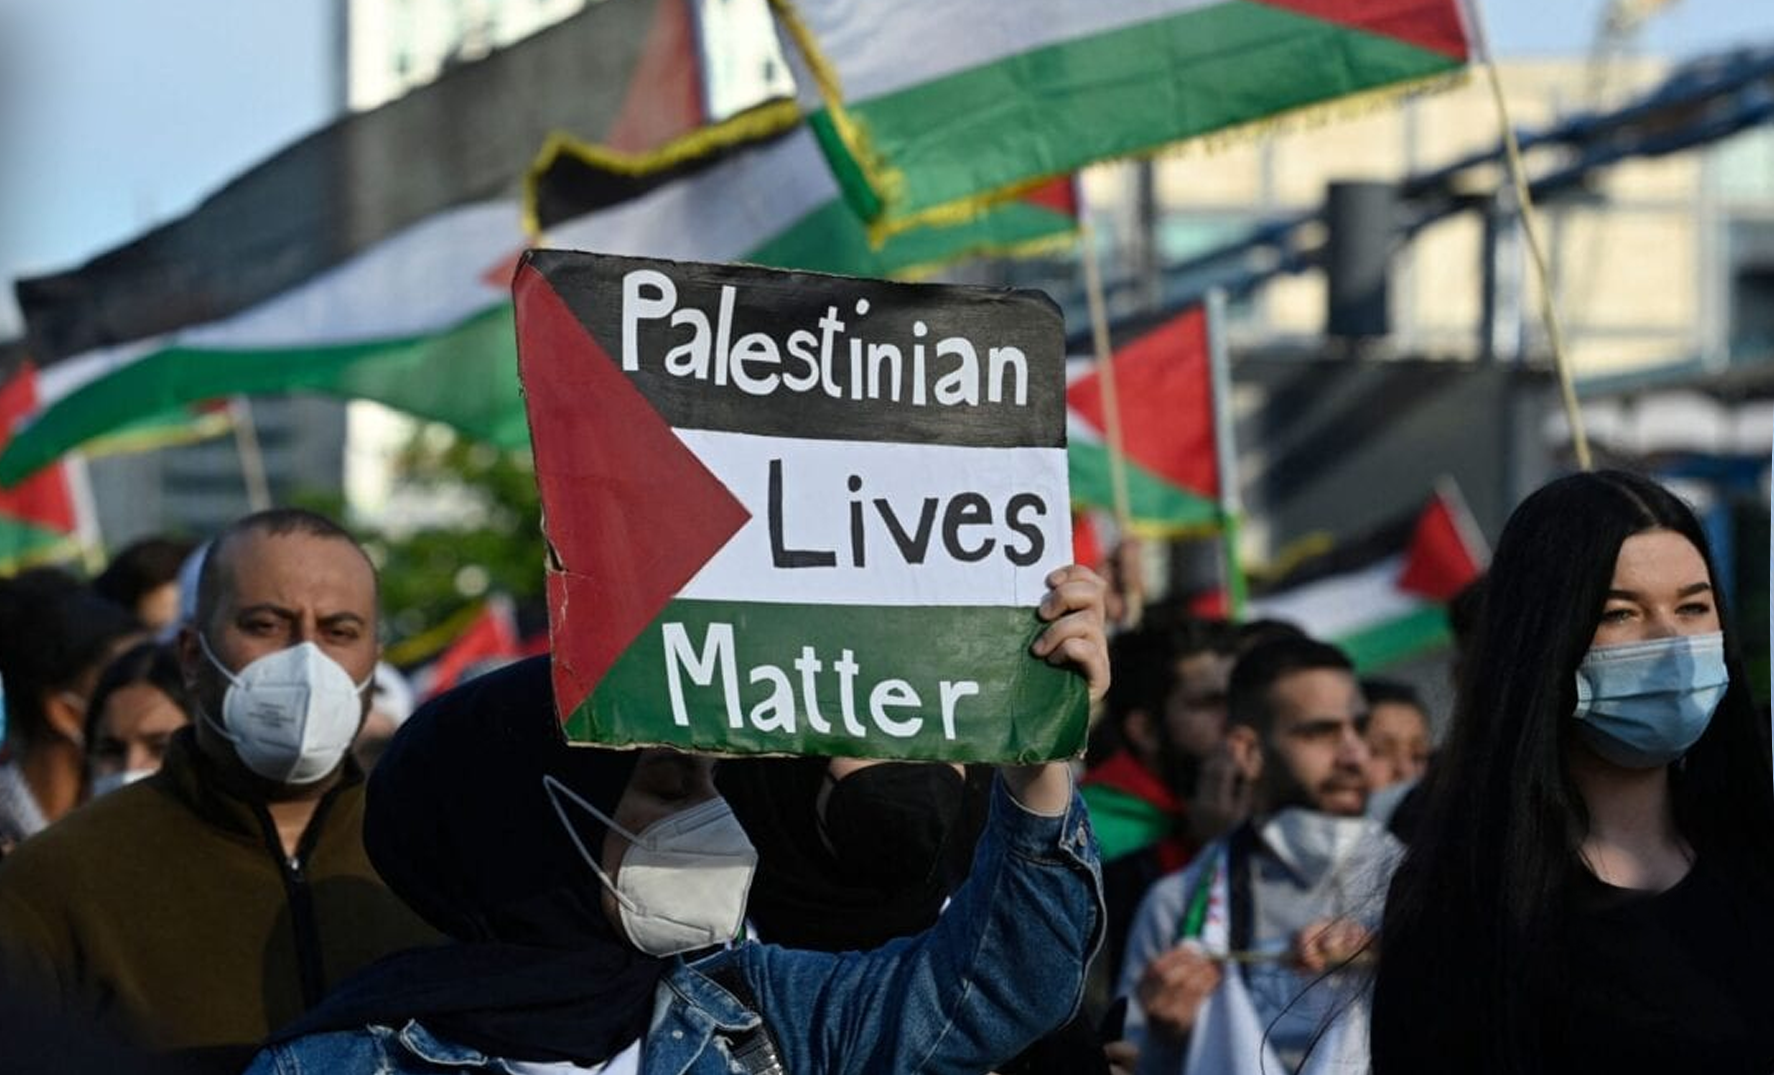 Demonstrators march in Berlin in solidarity with Gazans